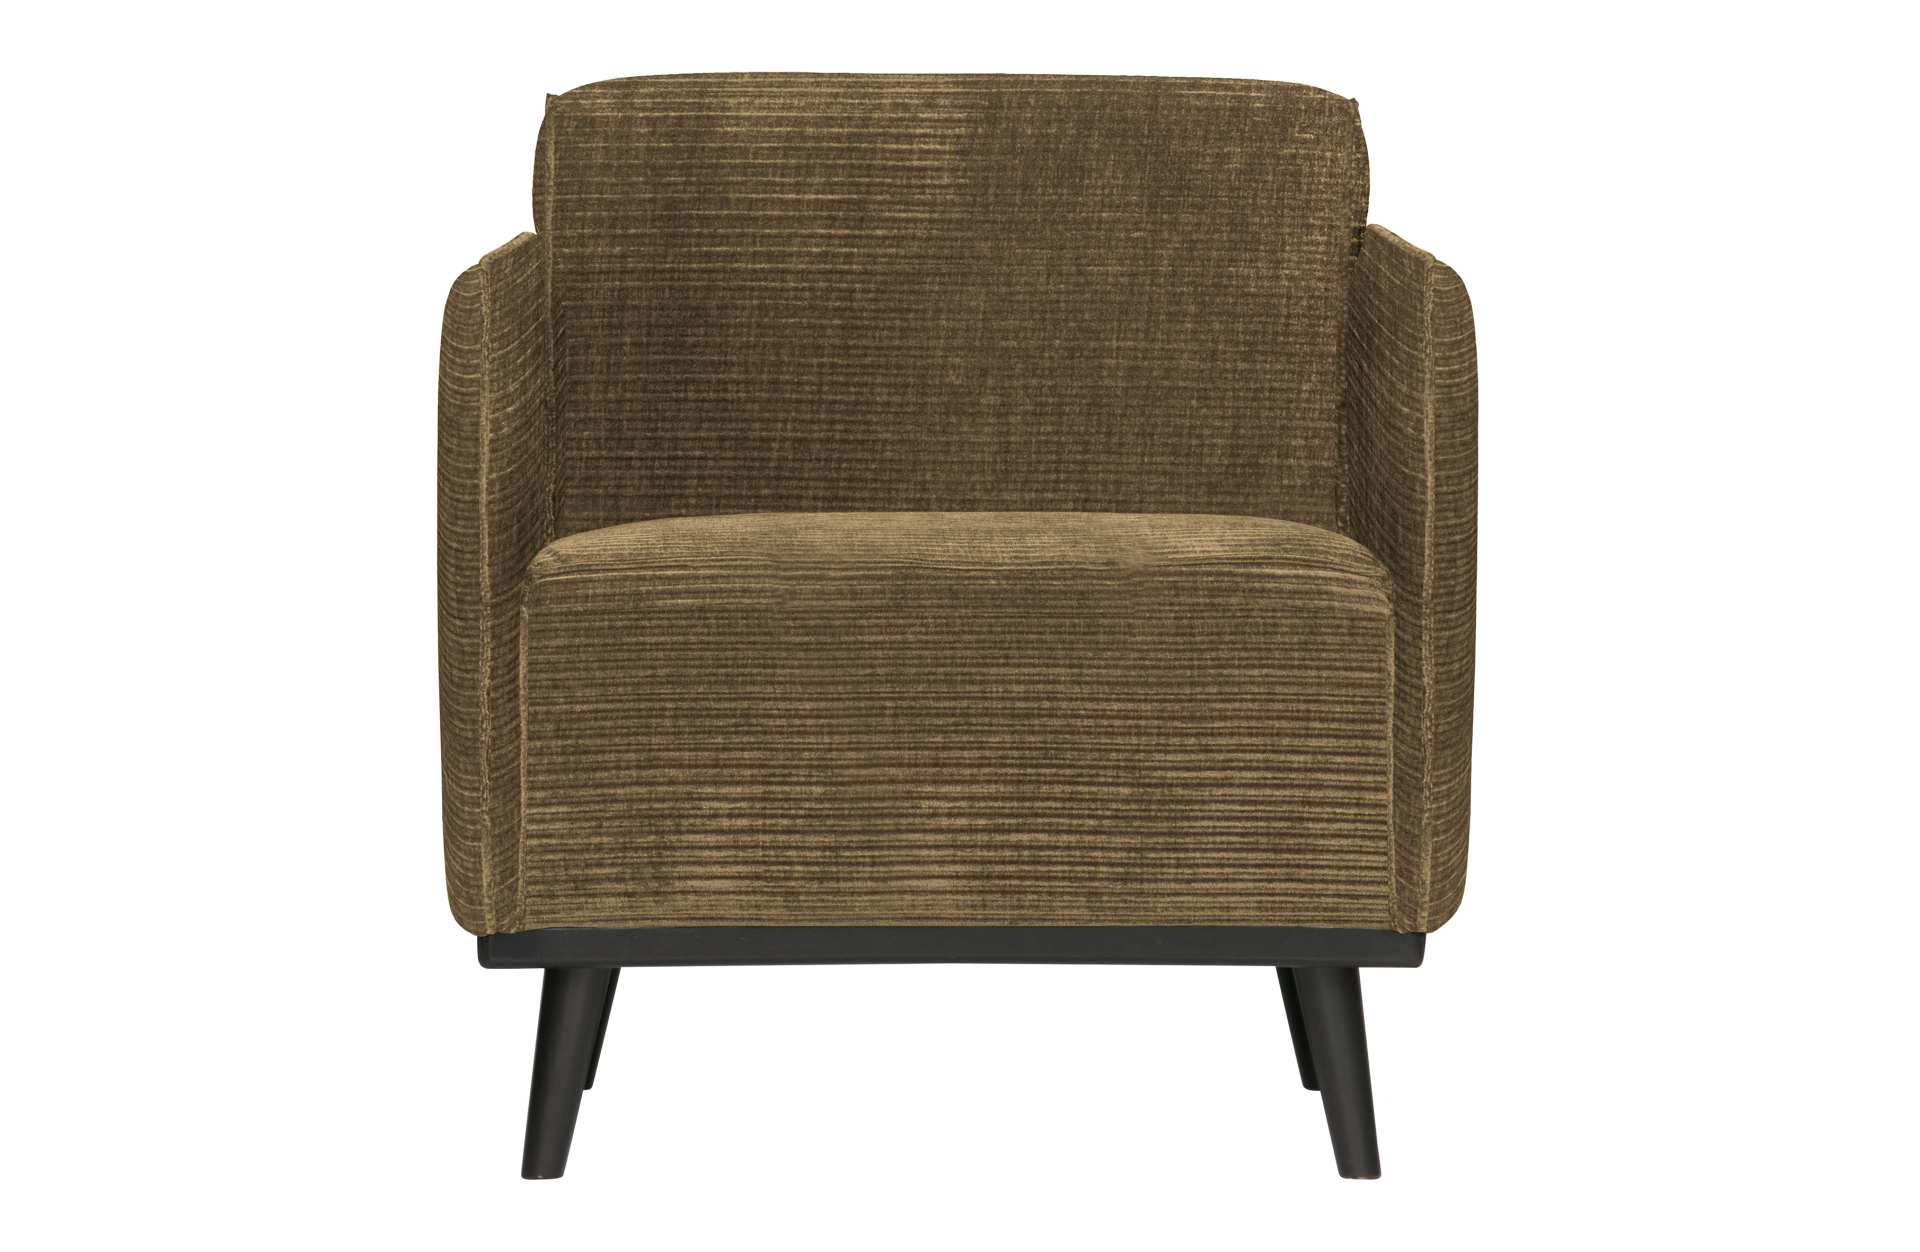 Der Sessel Statement überzeugt mit seinem modernen Design. Gefertigt wurde er aus gewebten Jacquard, welches einen braunen Farbton besitzen. Das Gestell ist aus Birkenholz und hat eine schwarze Farbe. Der Hocker hat eine Sitzhöhe von 46 cm.